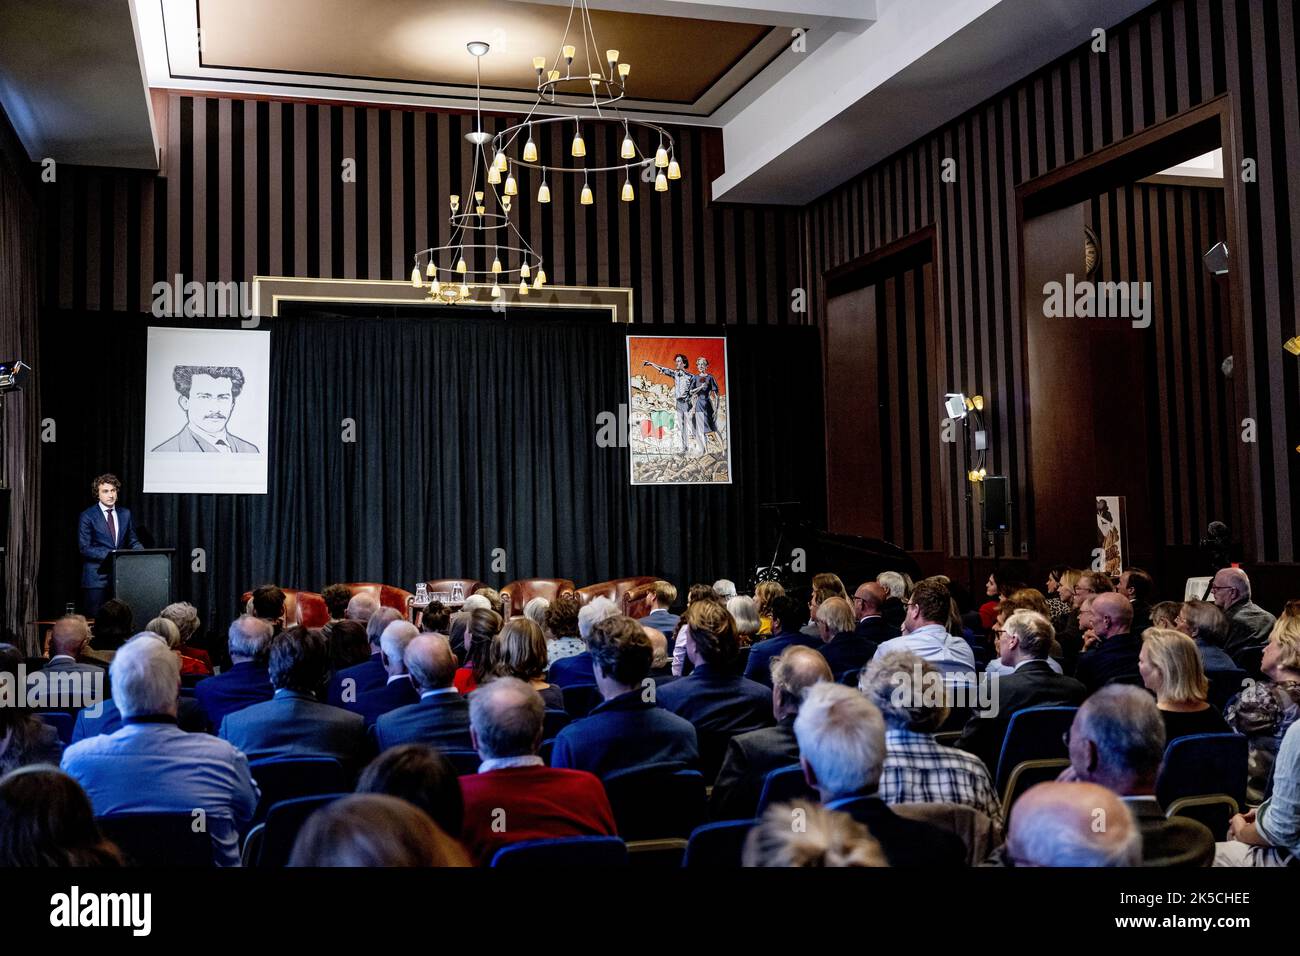 2022-10-07 18:23:18 LA HAYA - Jesse Klaver durante la conferencia de Kerkdijk bajo el título: Un nuevo comienzo: La promesa de la cooperación de izquierda. Durante la conferencia, el líder de GroenLinks expone su visión para el futuro de los Países Bajos. ANP ROBIN UTRECHT netherlands Out - belgium Out Foto de stock